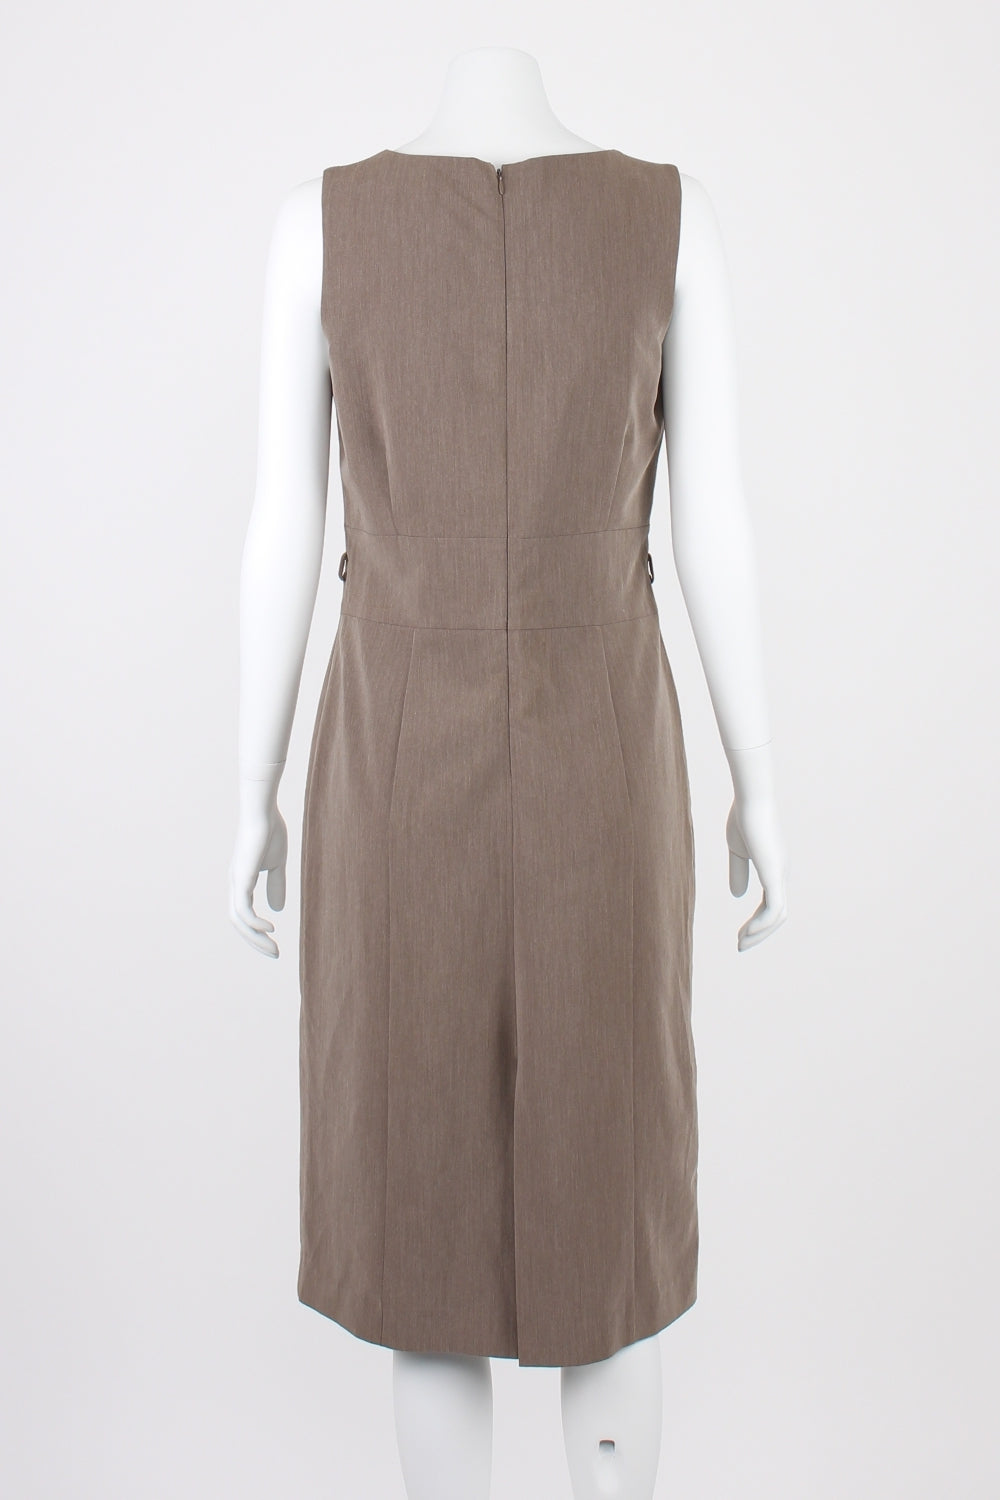 Barkins Brown Sleeveless Dress 12 (missing belt)